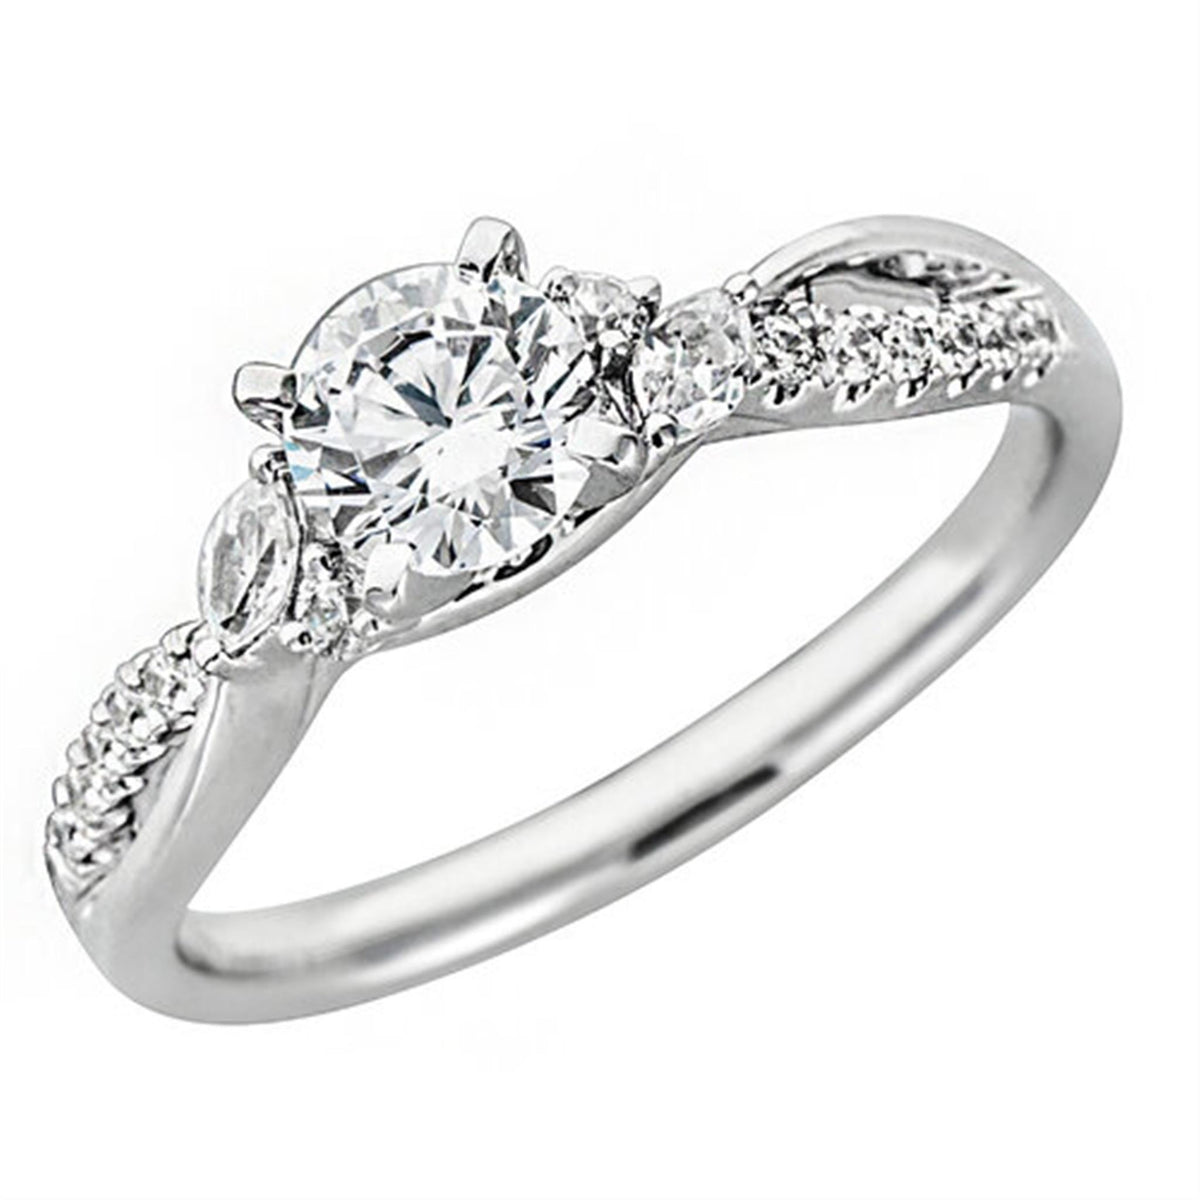 Diamond - Engagement Ring Mounting